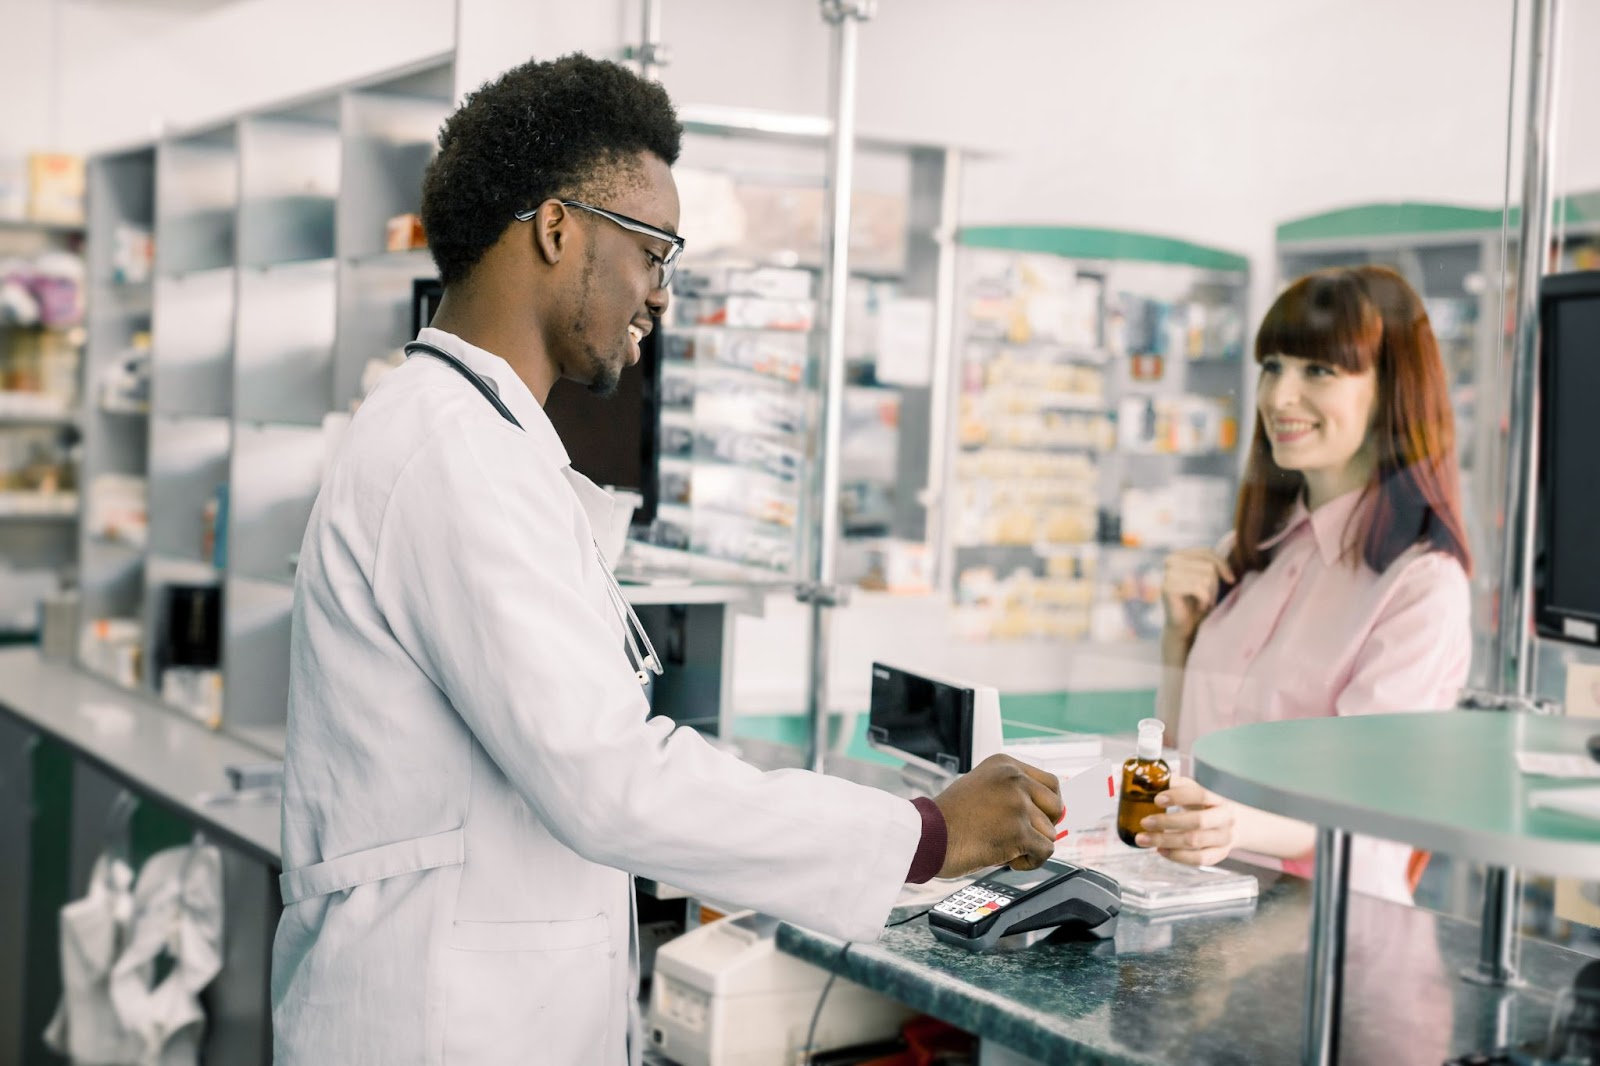 A pharmacy tech hands a customer an item